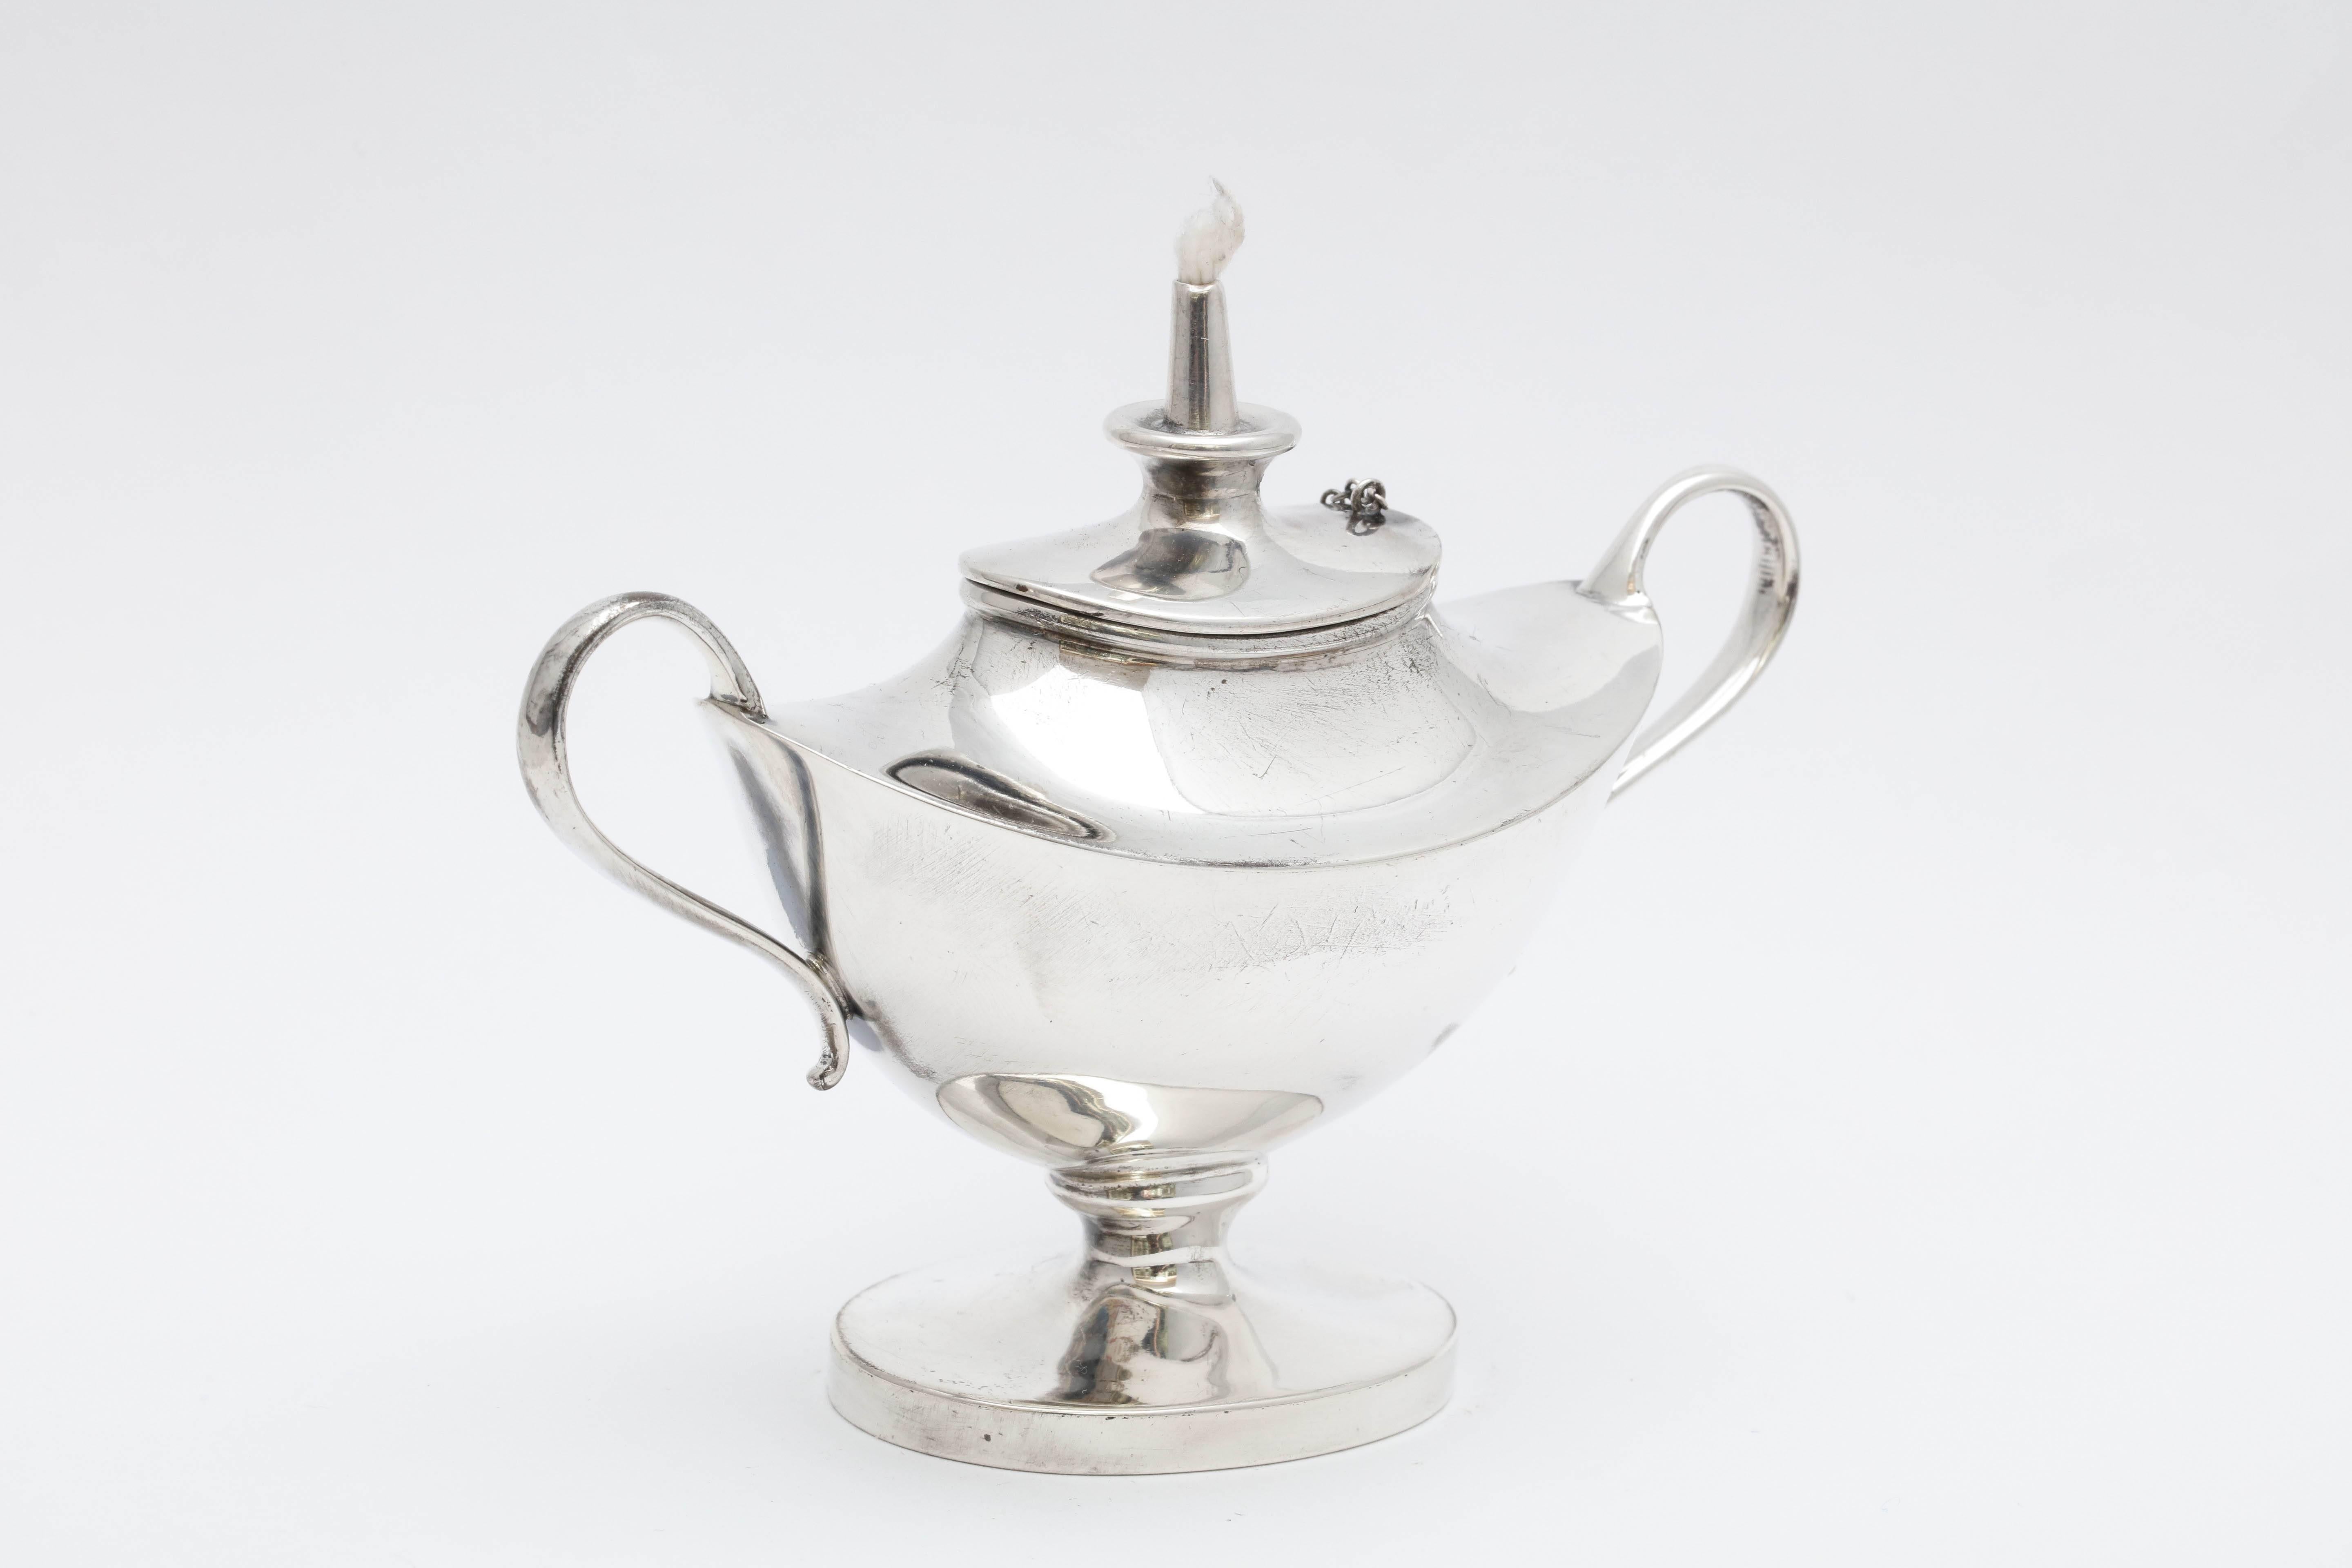 Edwardian Sterling Silber Aladdins Lampe-Stil Tabelle Öllampe oder Feuerzeug 1